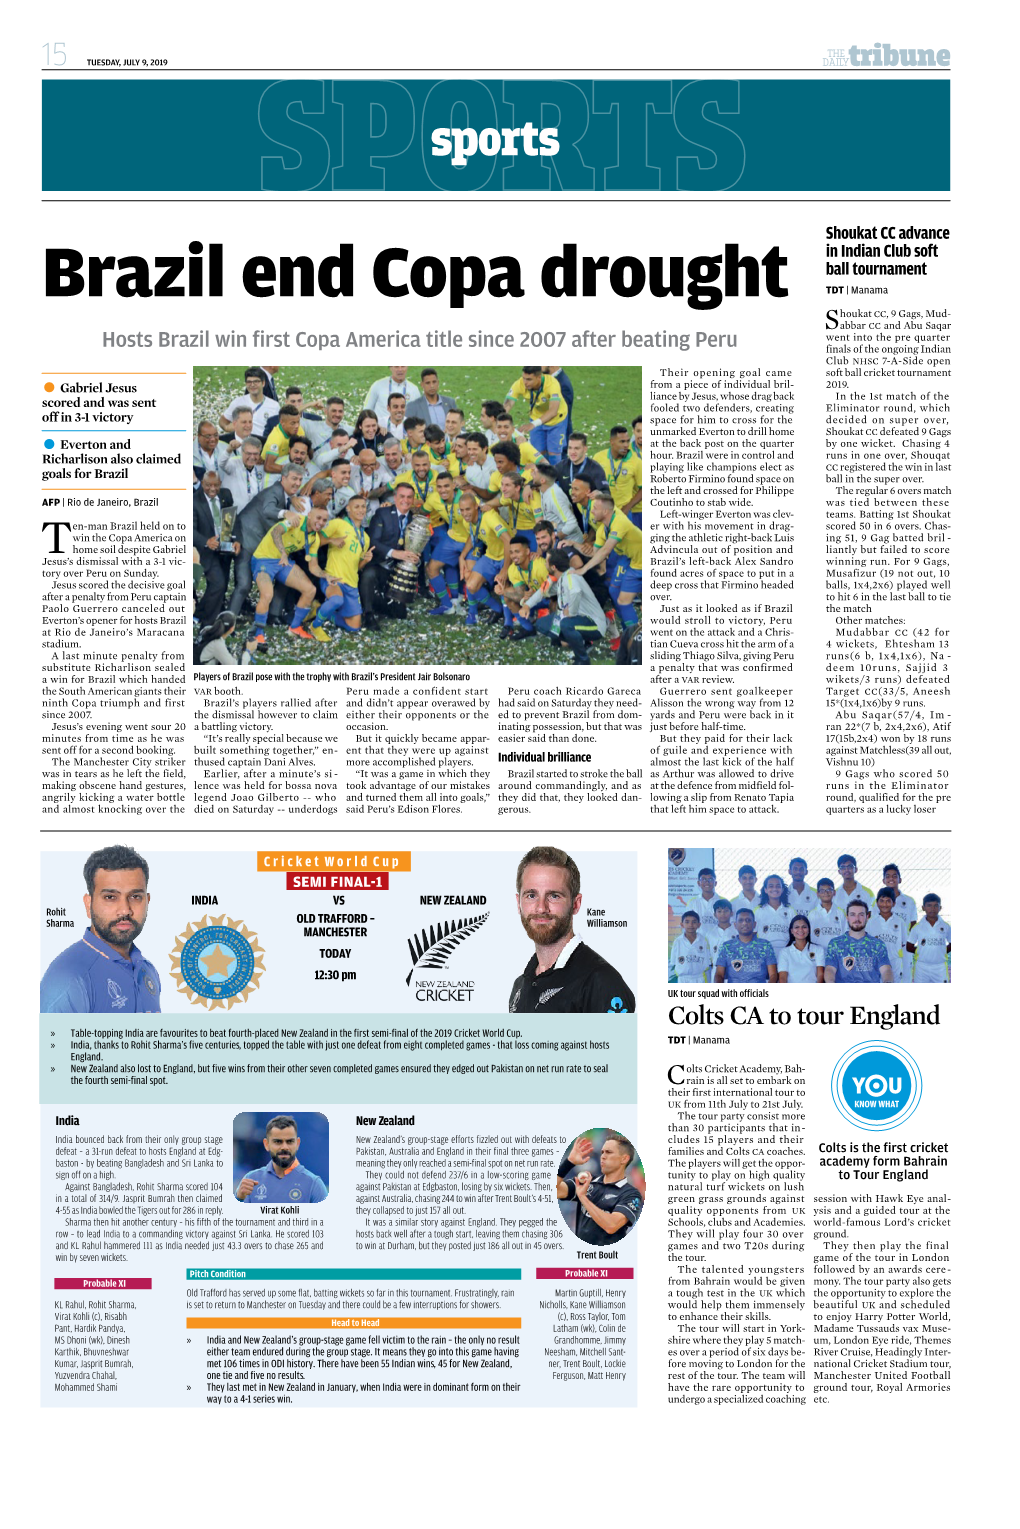 Brazil End Copa Drought